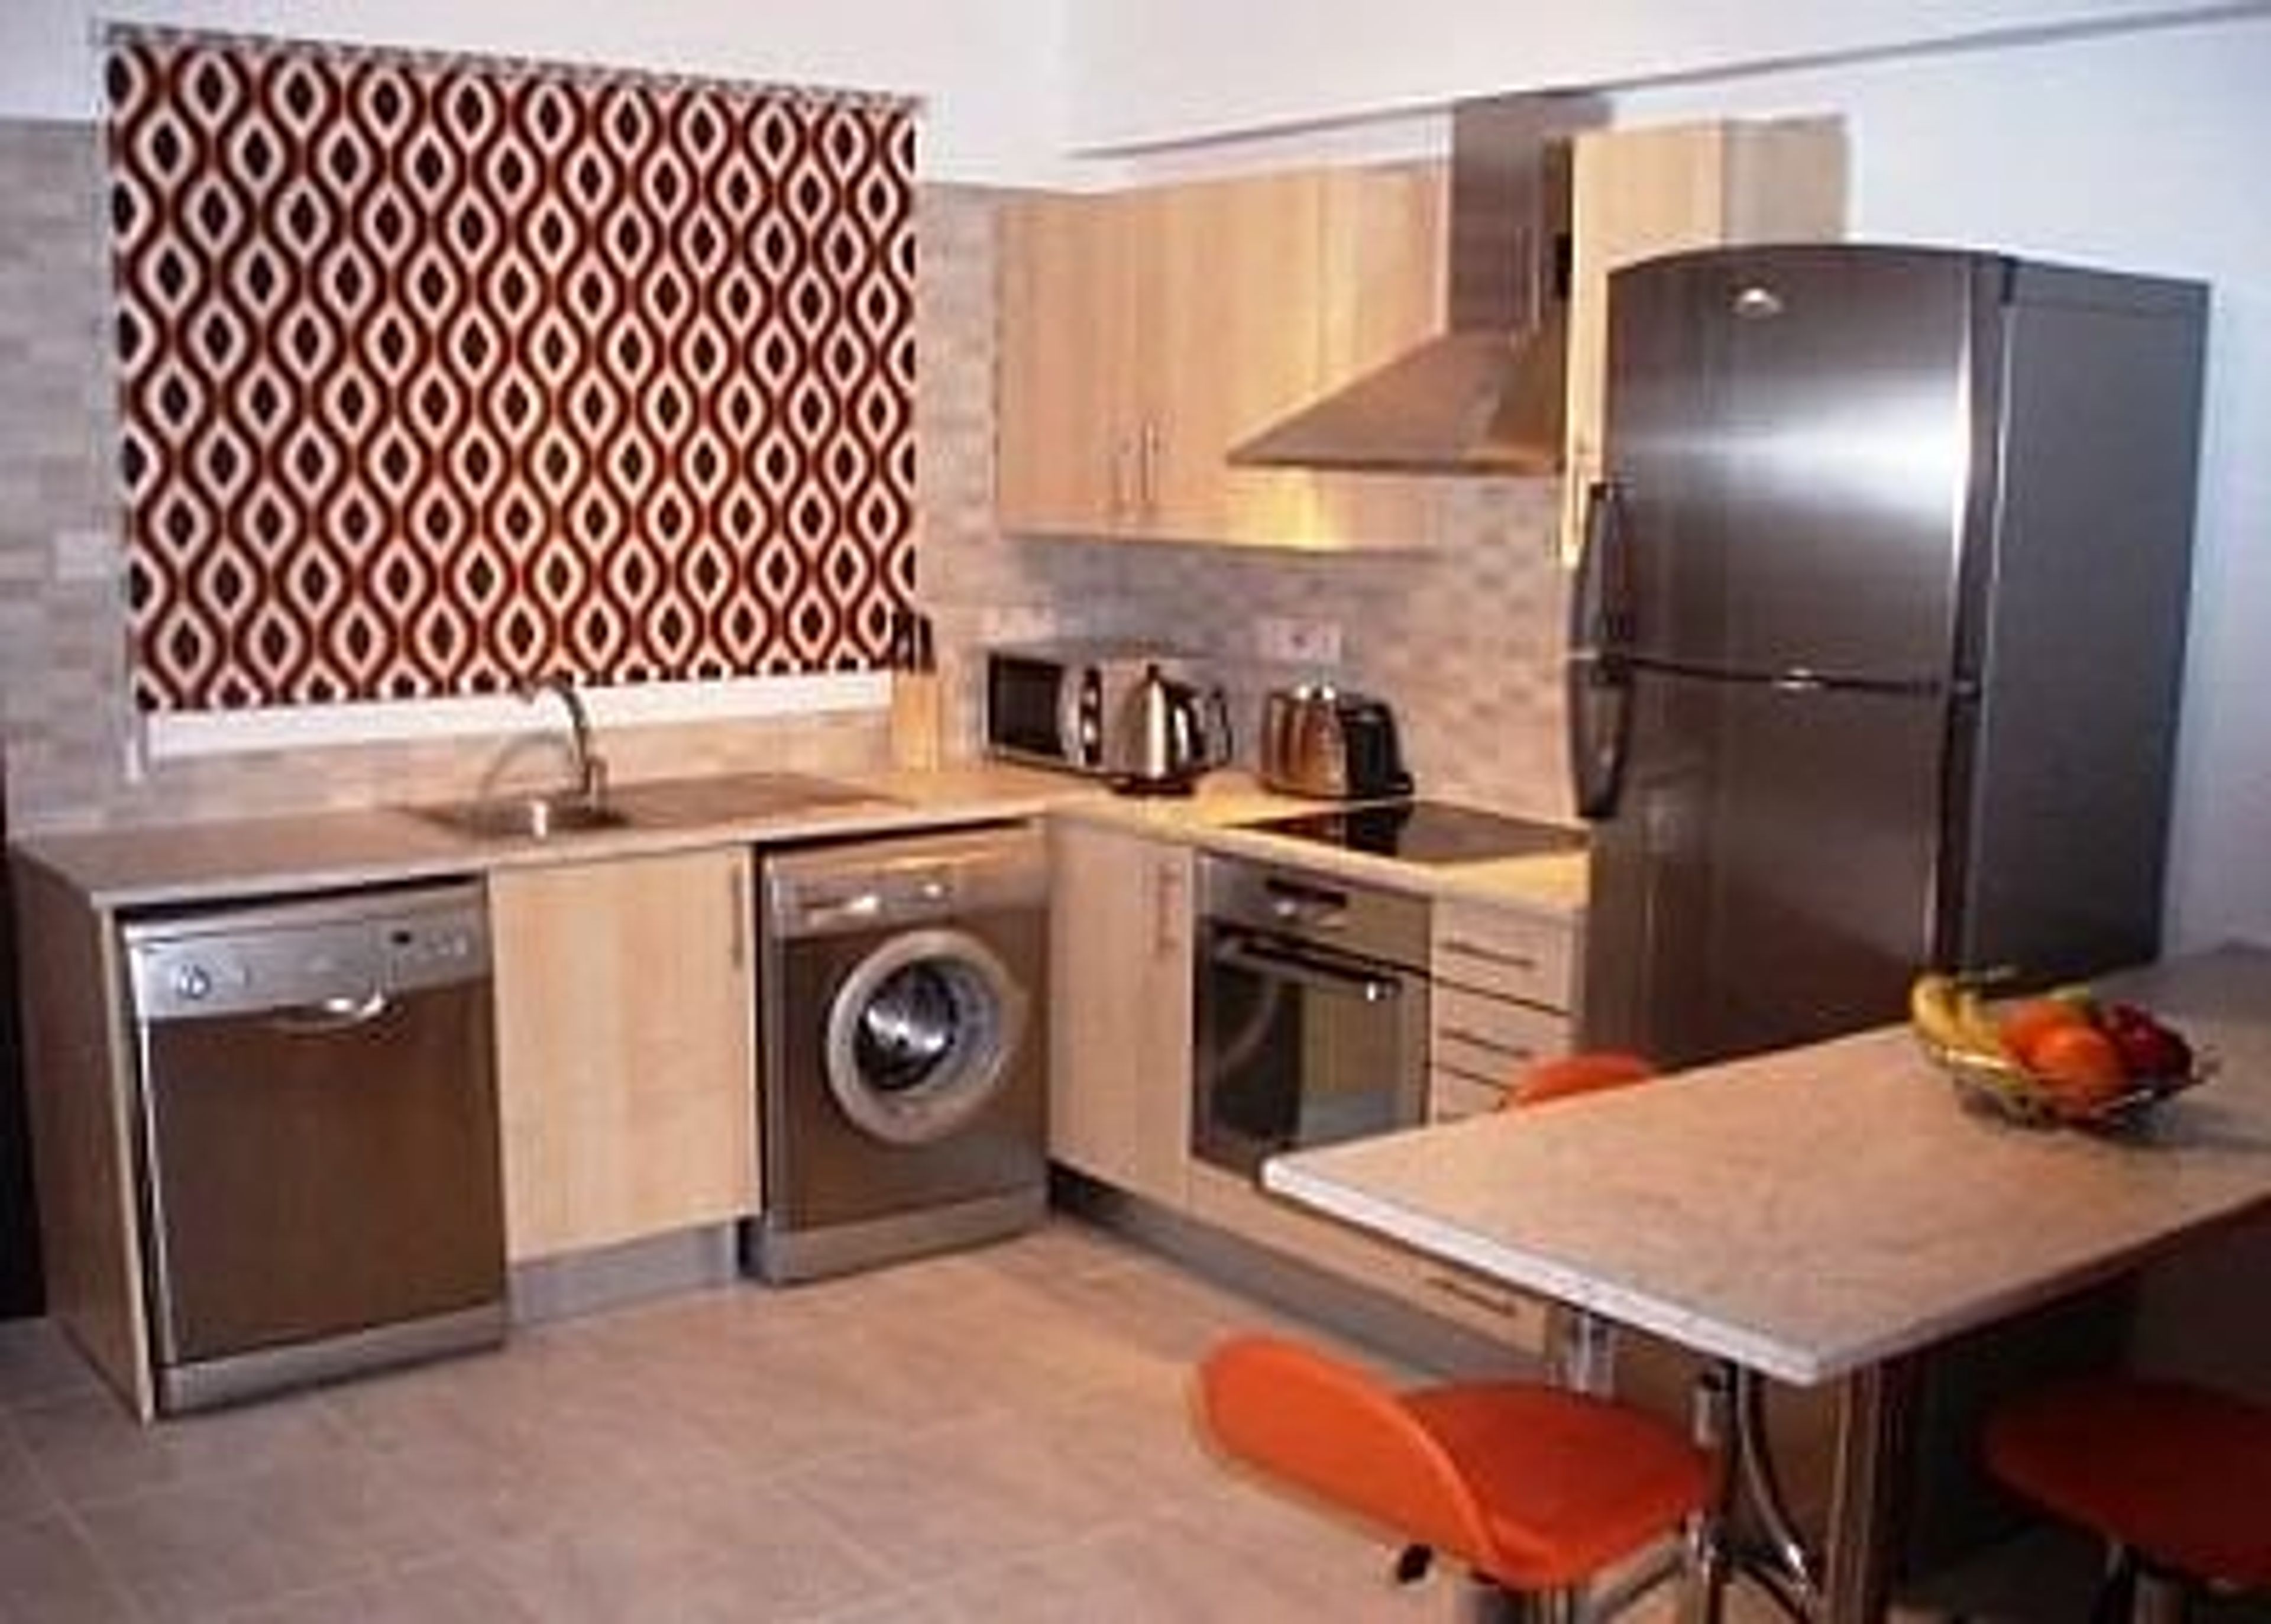 Modern kitchen space